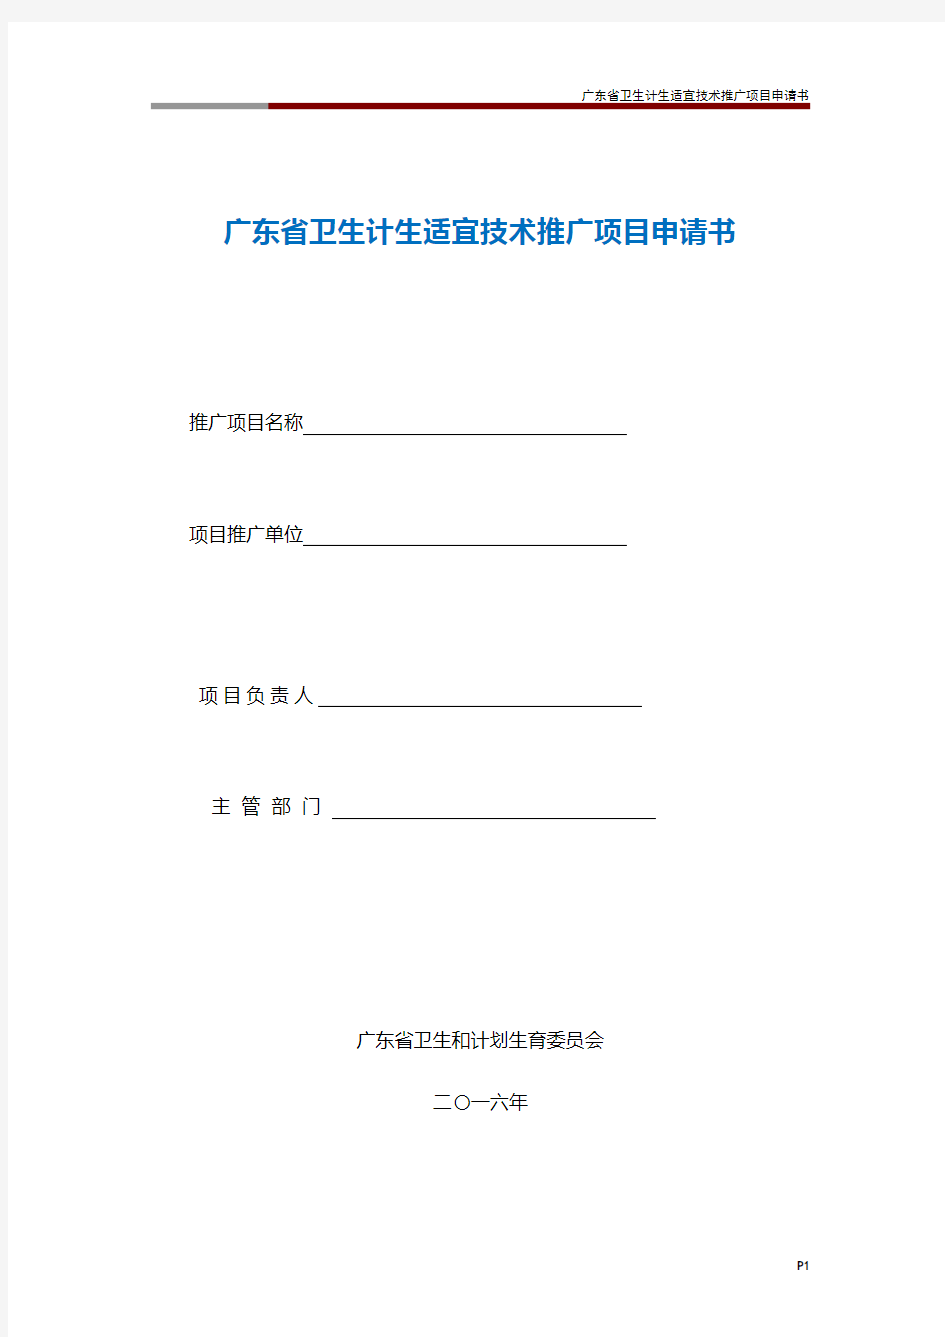 广东省卫生计生适宜技术推广项目申请书